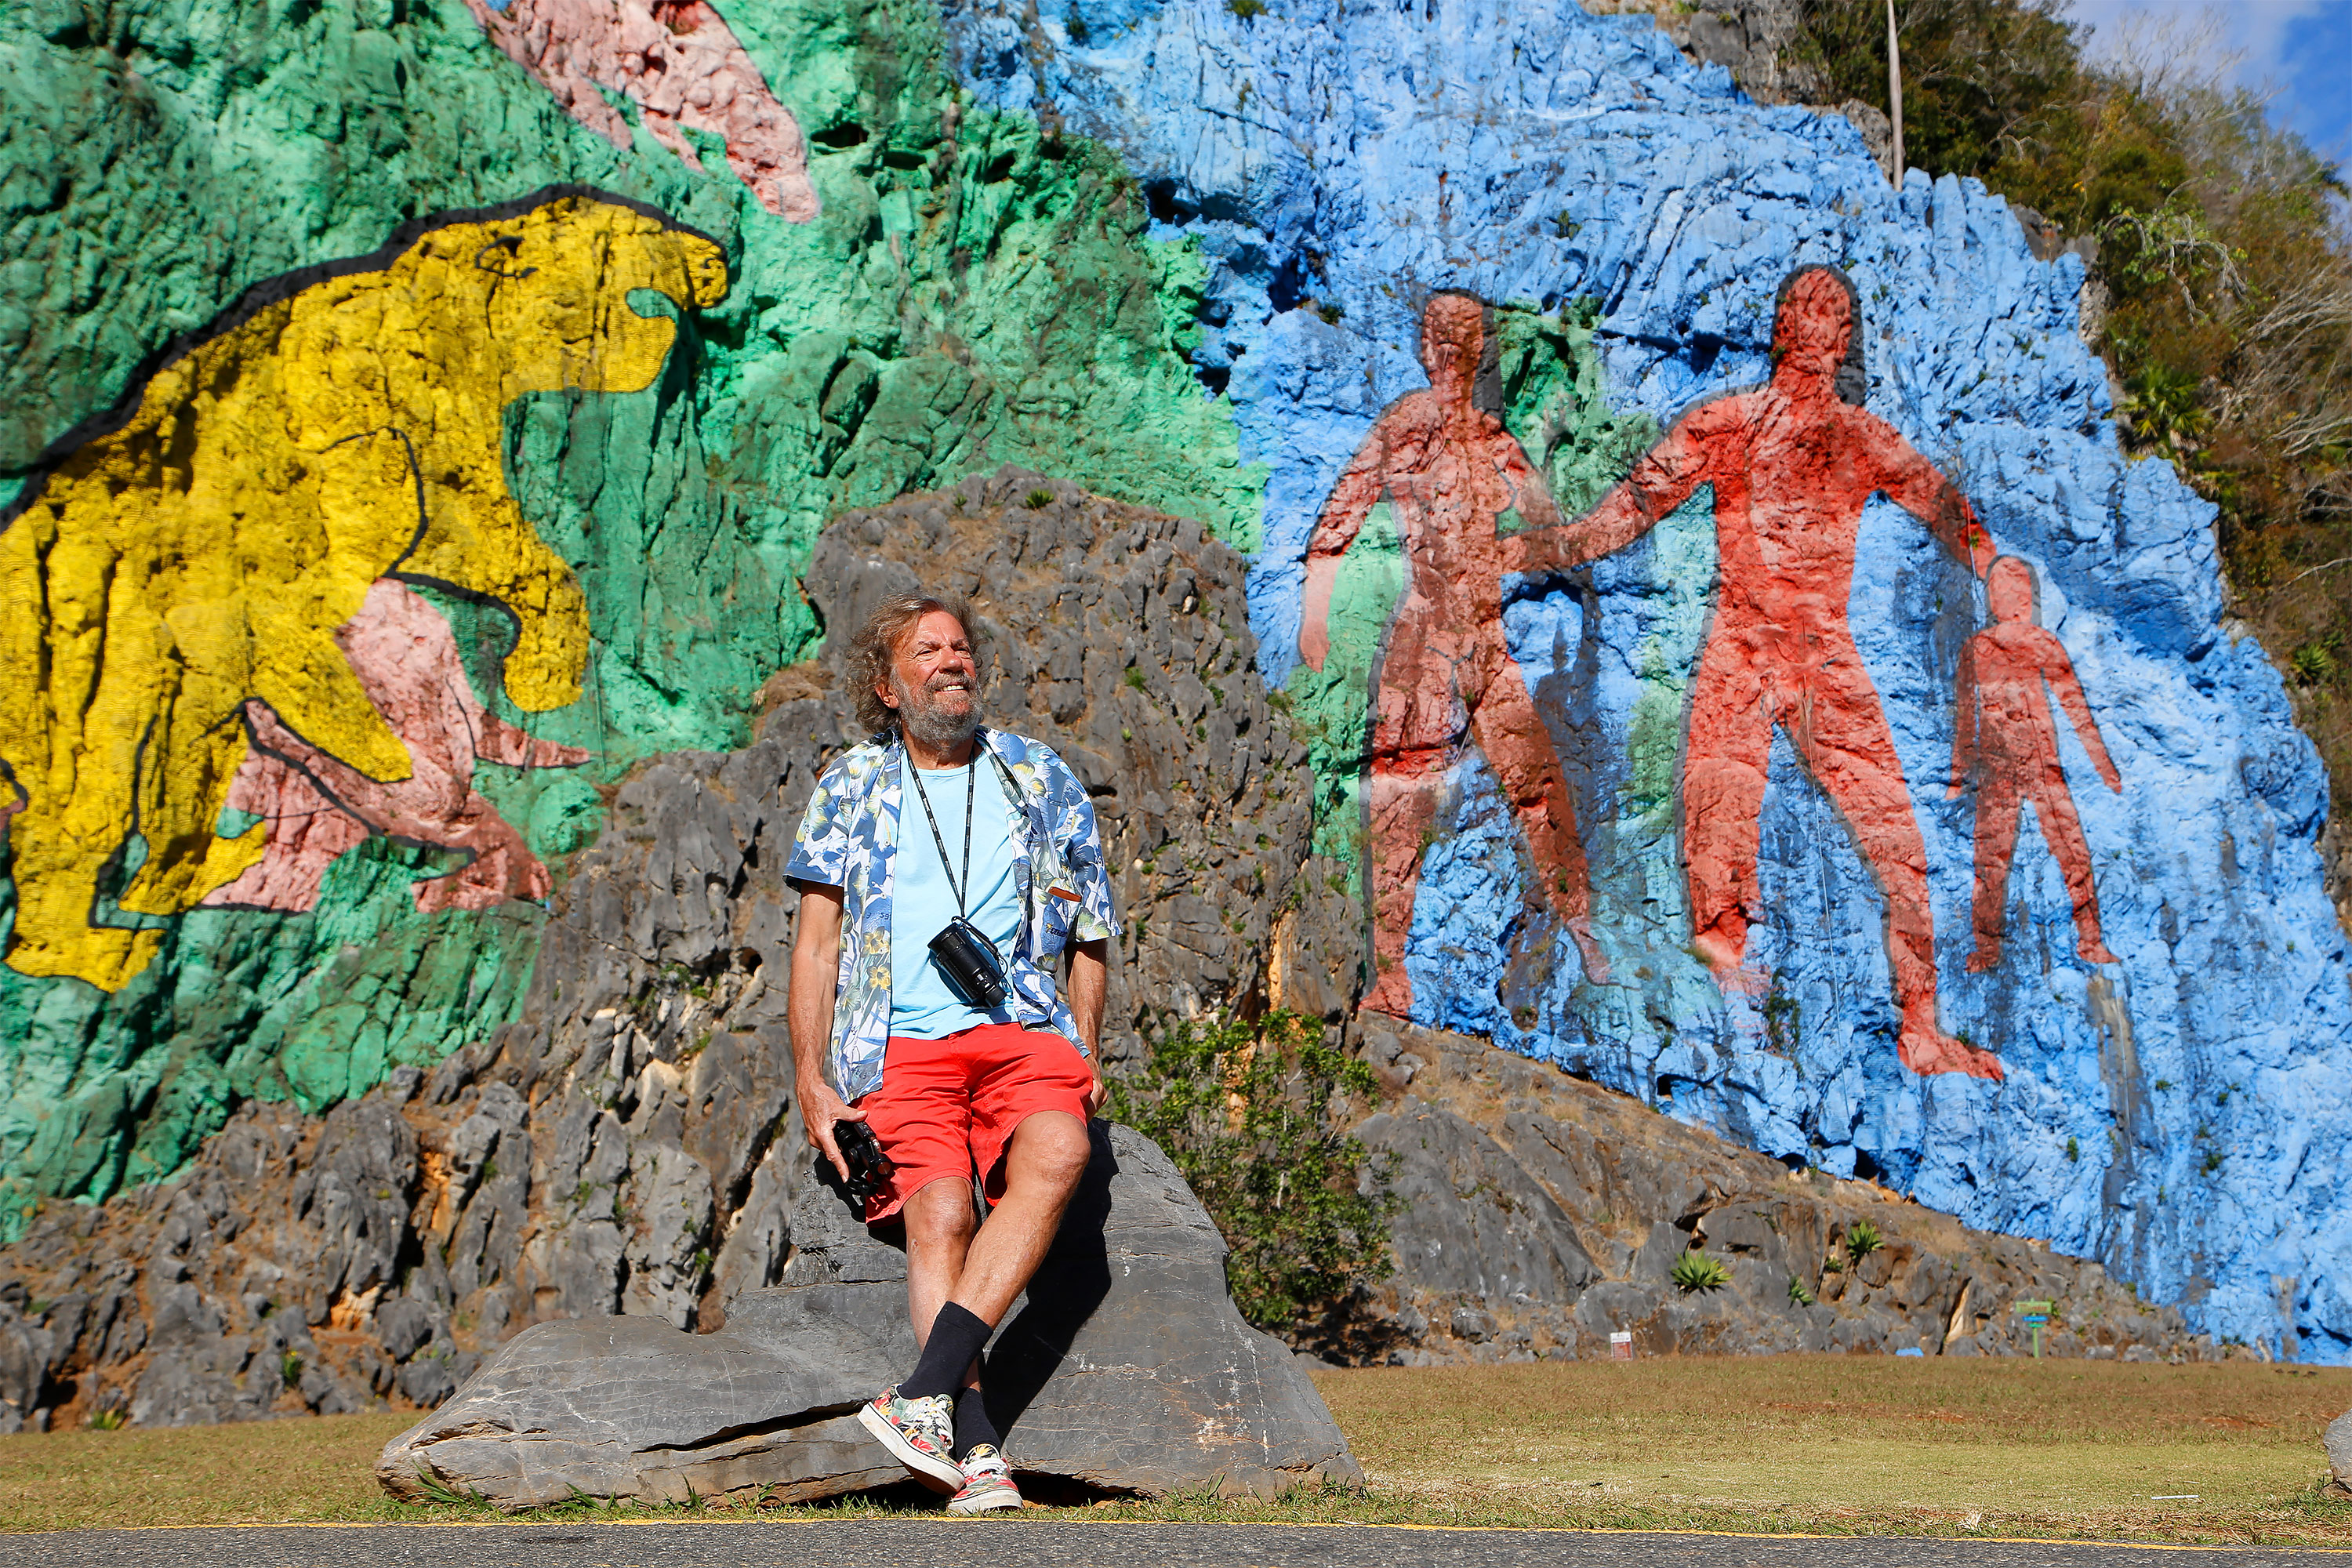 Antoine devant le « Mur de la Préhistoire », une œuvre géante qui rend hommage (tardivement) au peuple Taïno qui vivait sur l'île avant l'arrivée des colons espagnols et qui a été décimé. © Antoine